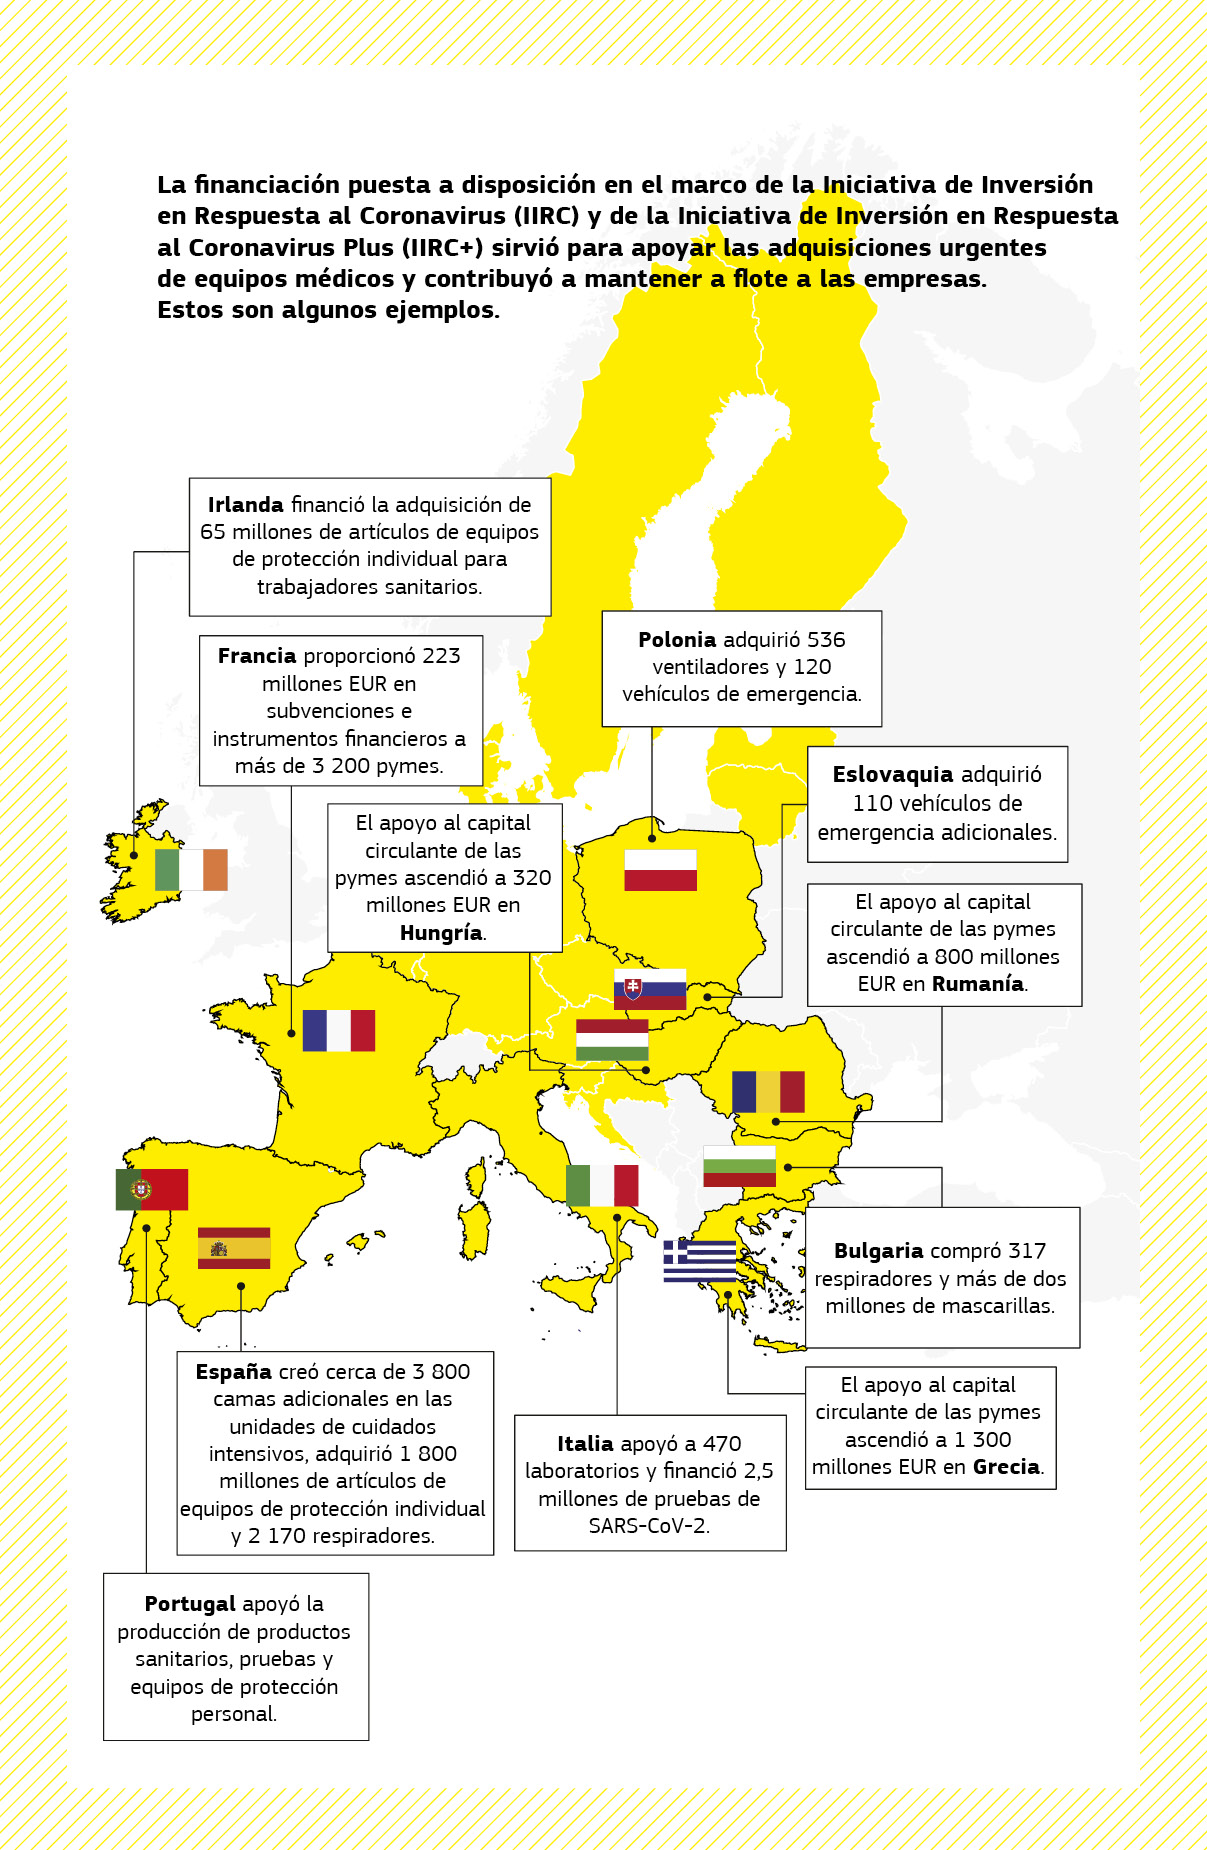 Mapa que resume una serie de proyectos de apoyo durante la pandemia financiados por la Iniciativa de Inversión en Respuesta al Coronavirus y la Iniciativa de Inversión en Respuesta al Coronavirus Plus en varios Estados miembros de la UE.